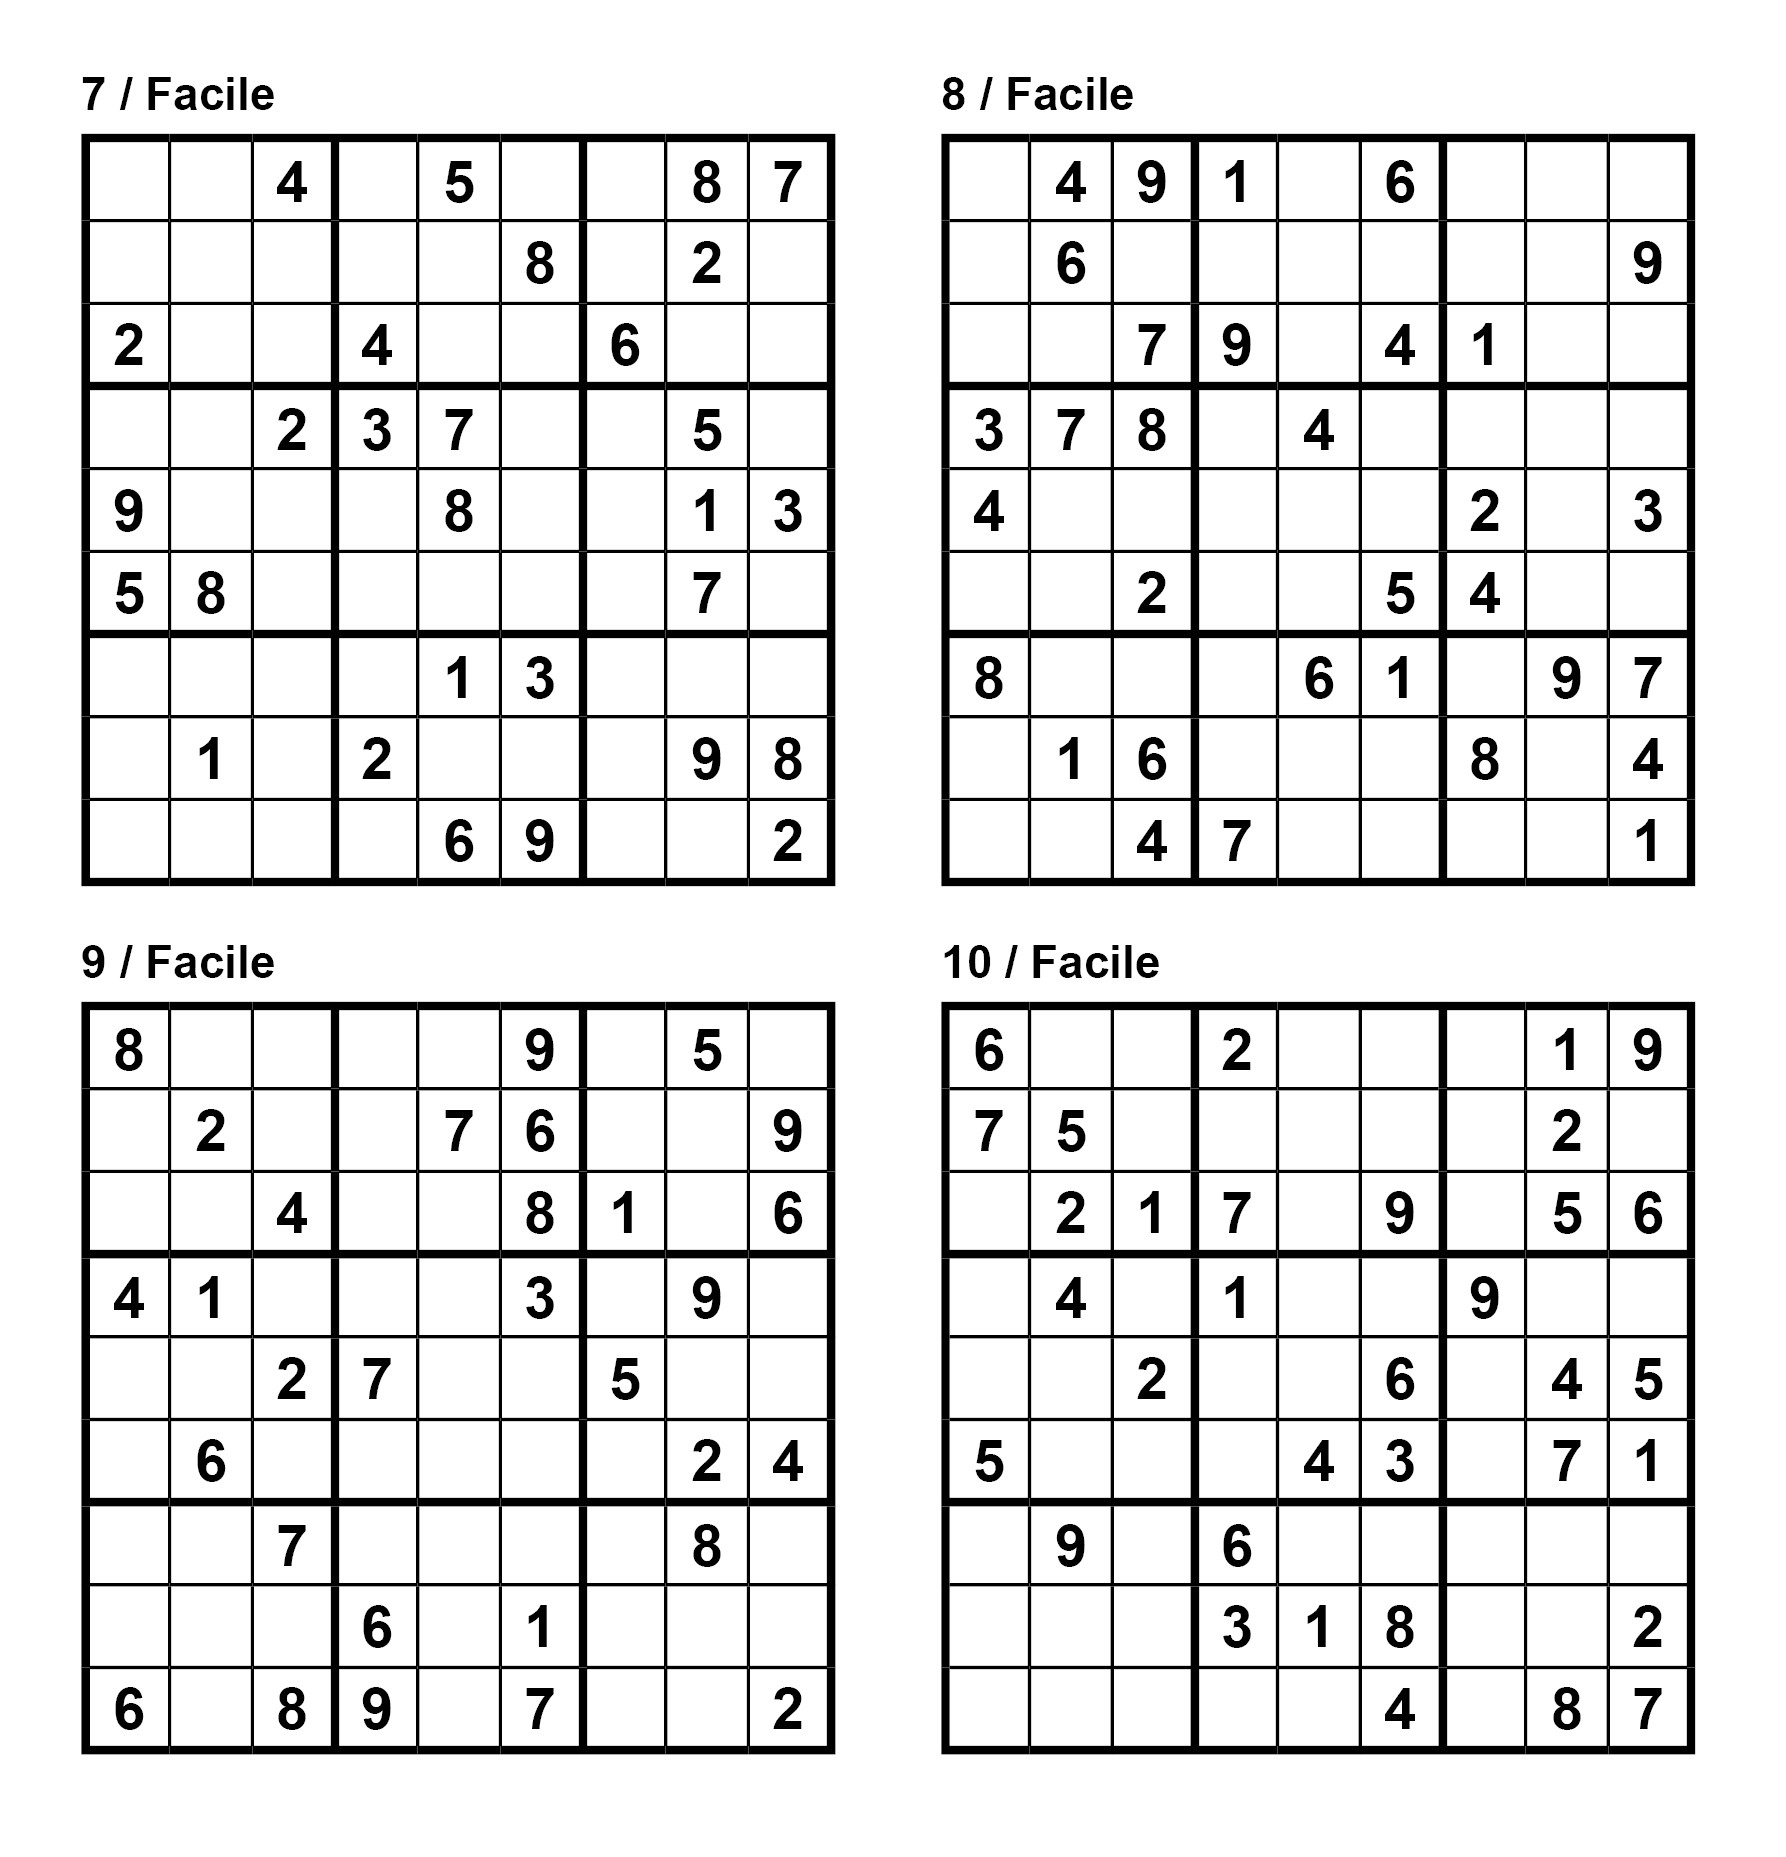 12x12 Sudoku Printable